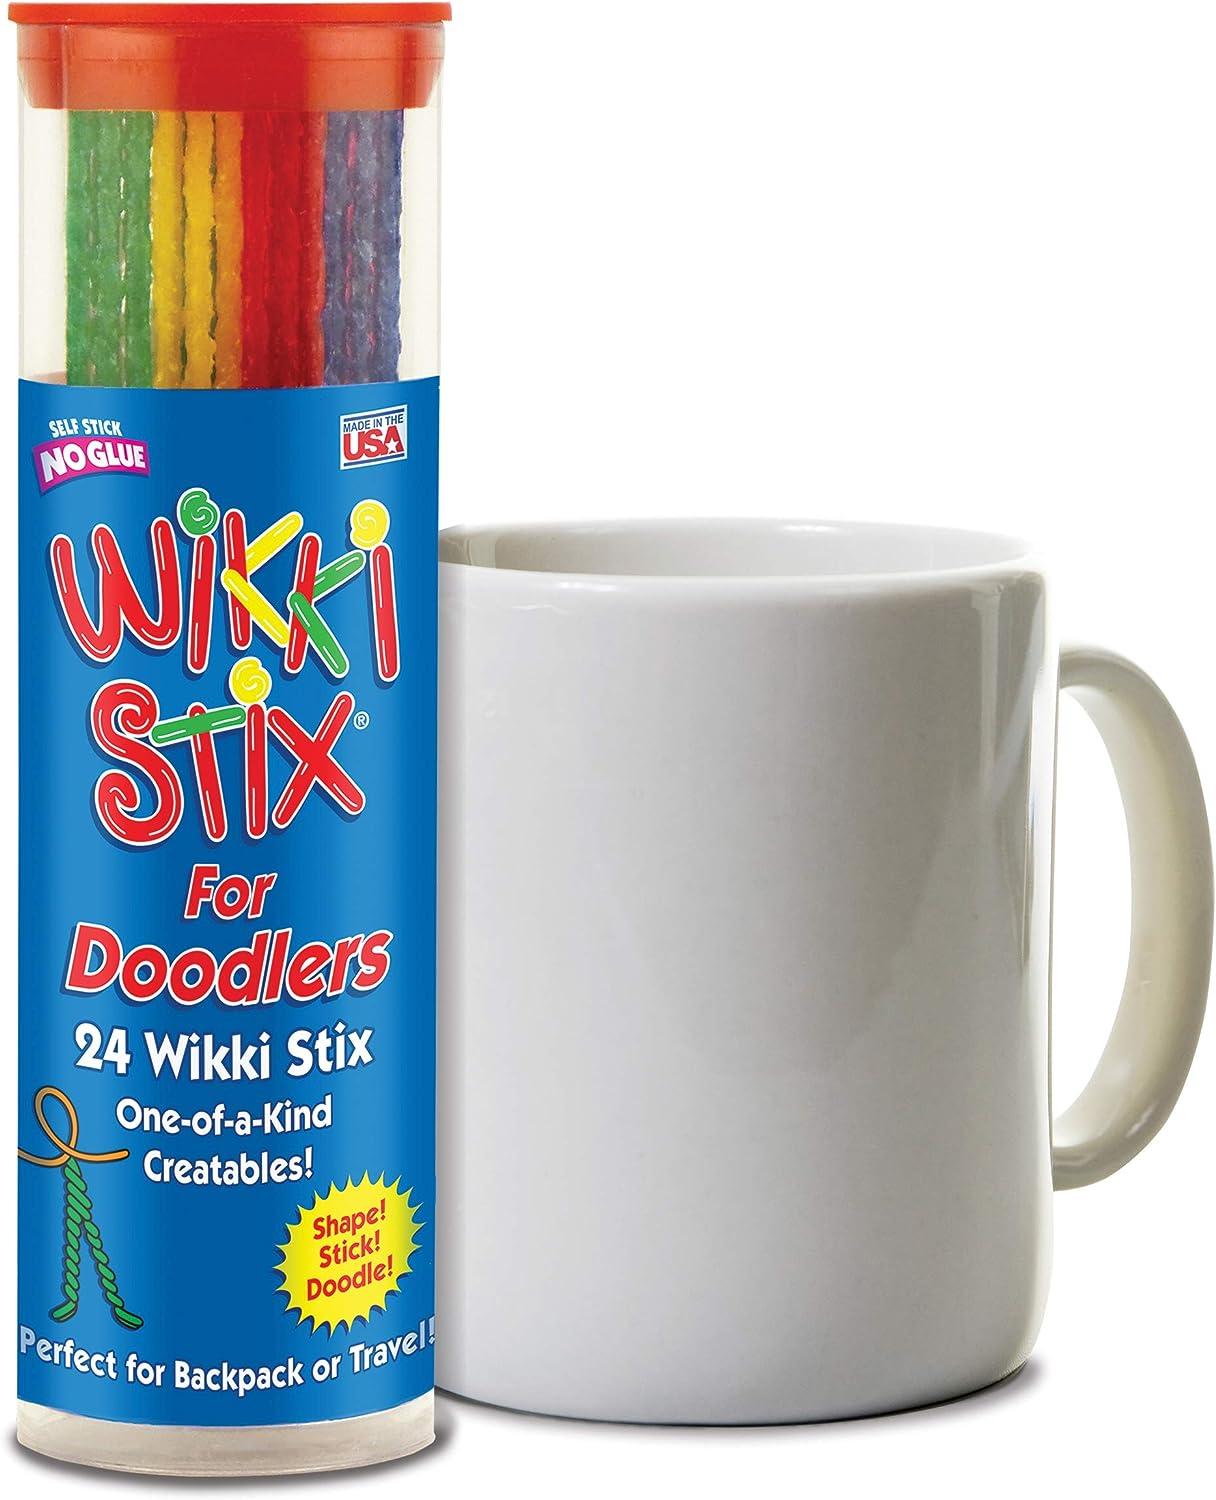 What are Wikki Stix?